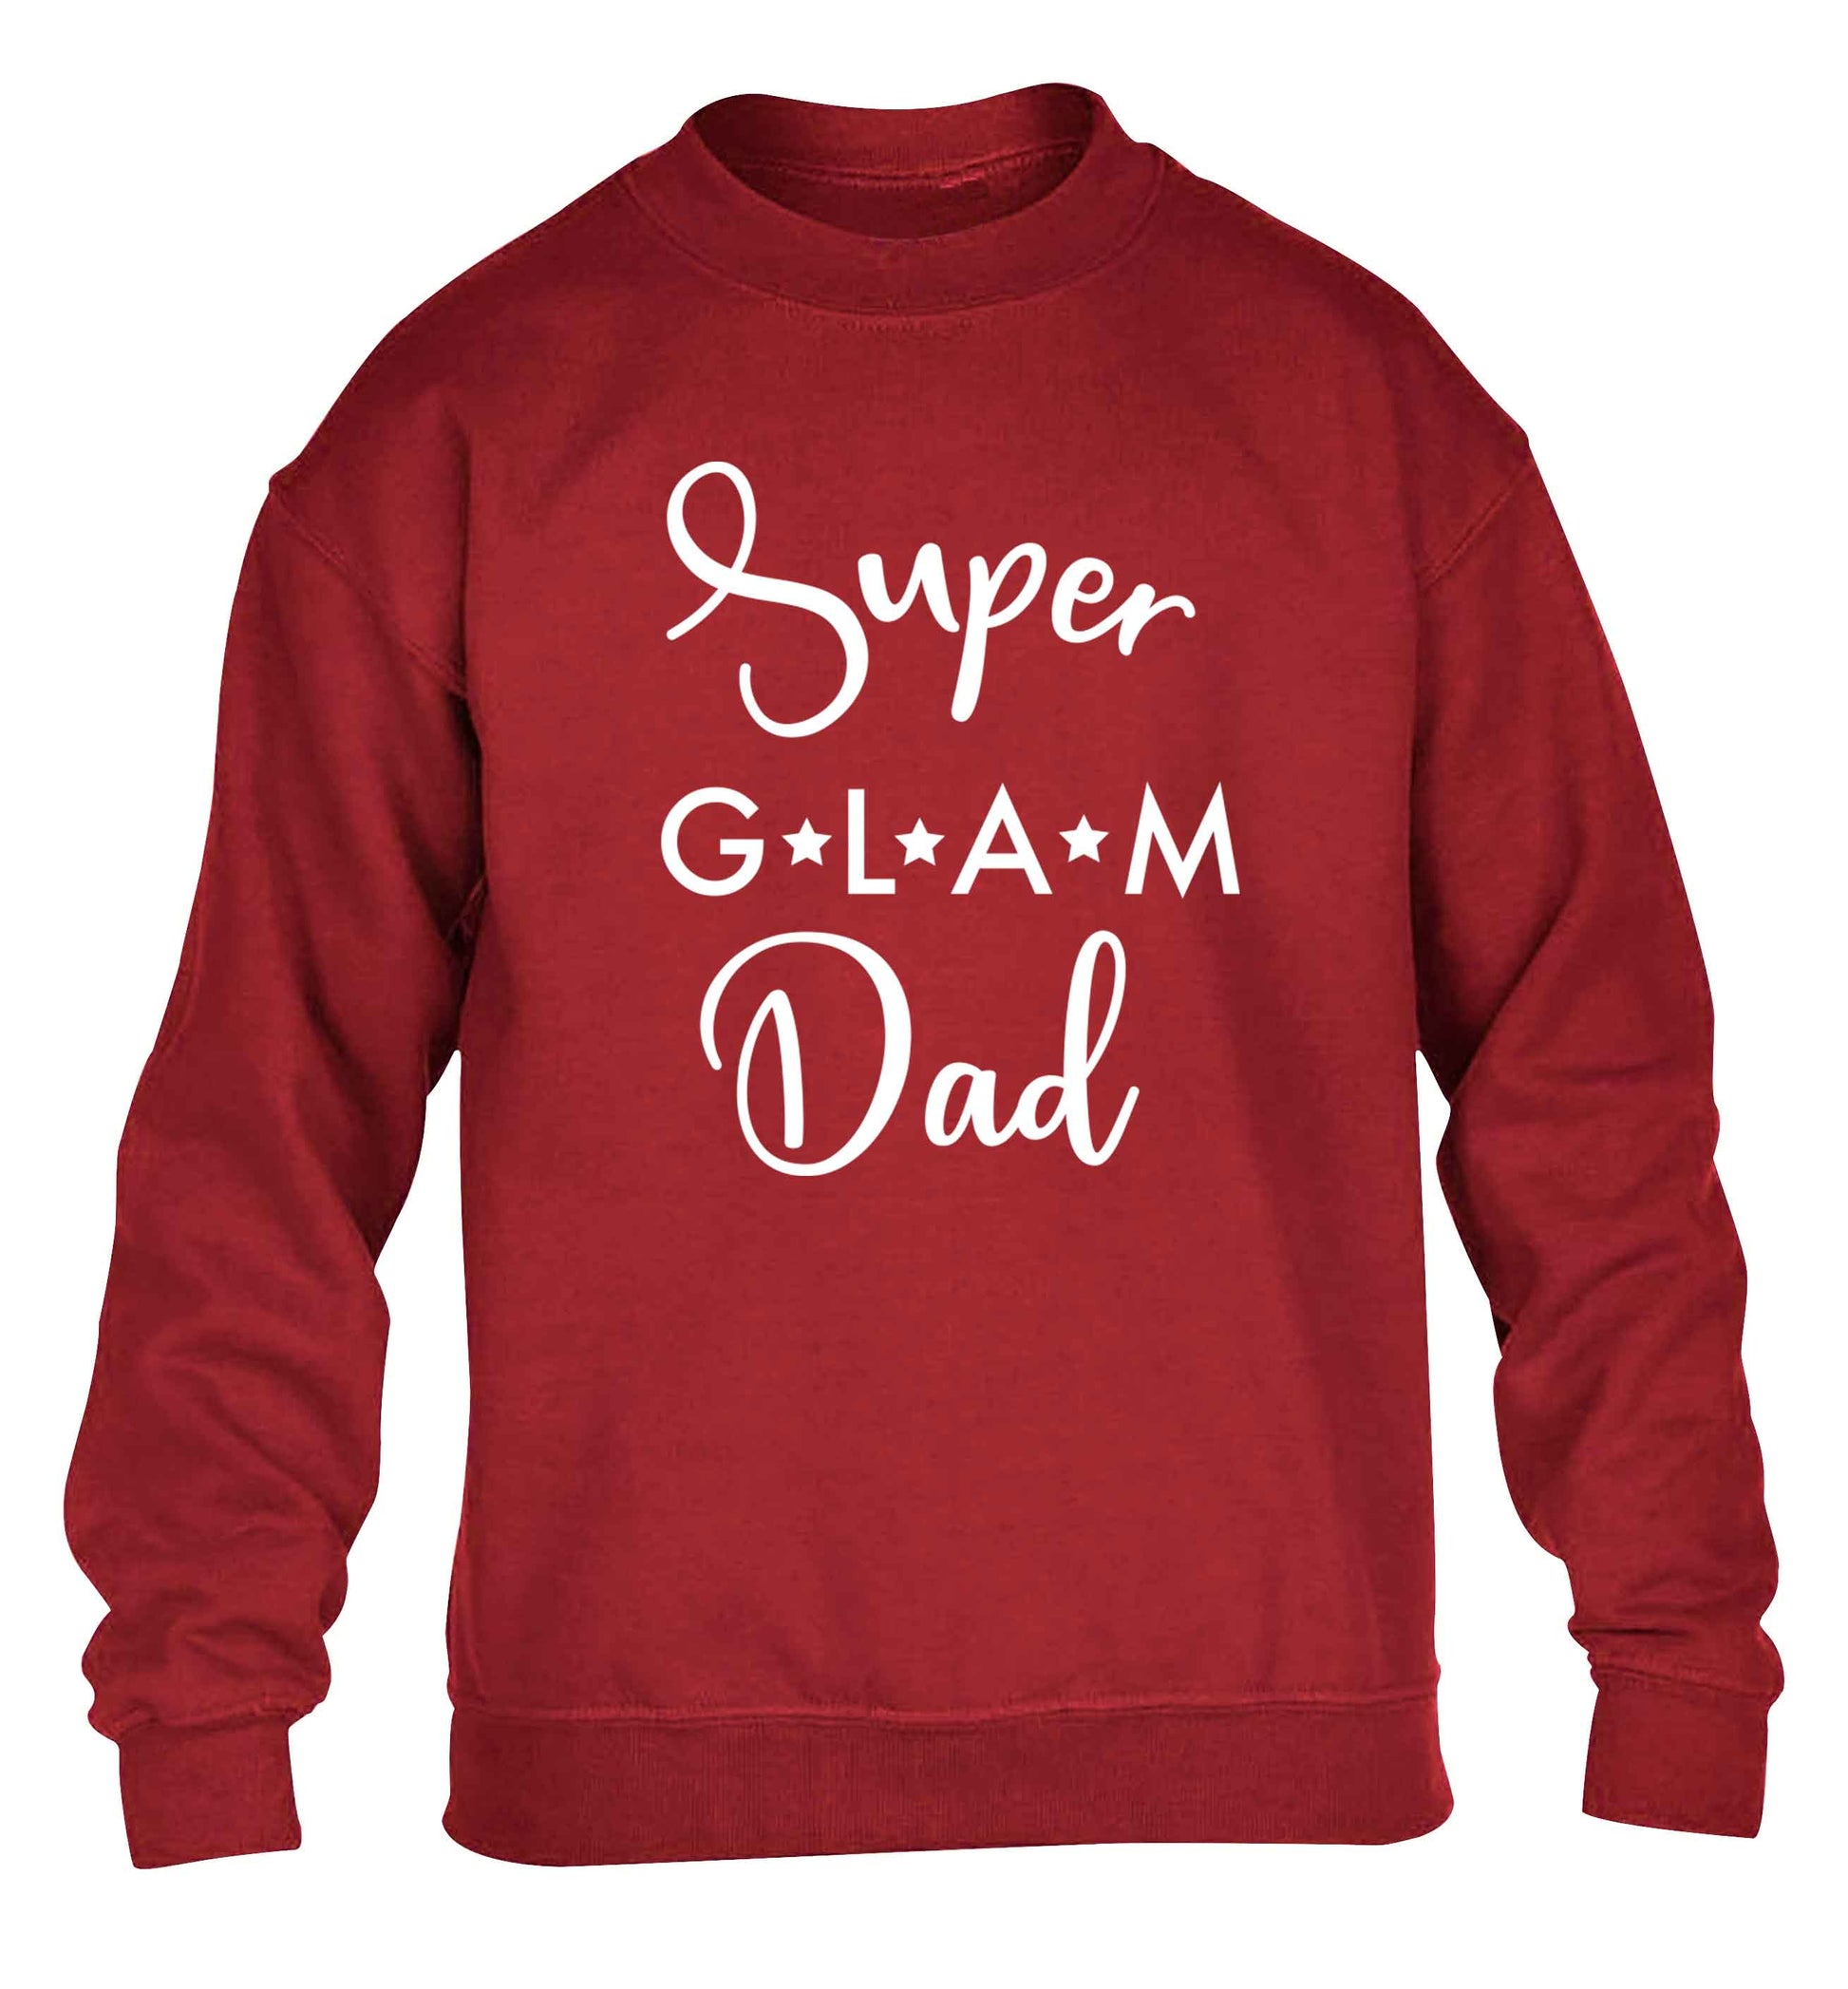 Super glam Dad children's grey sweater 12-13 Years